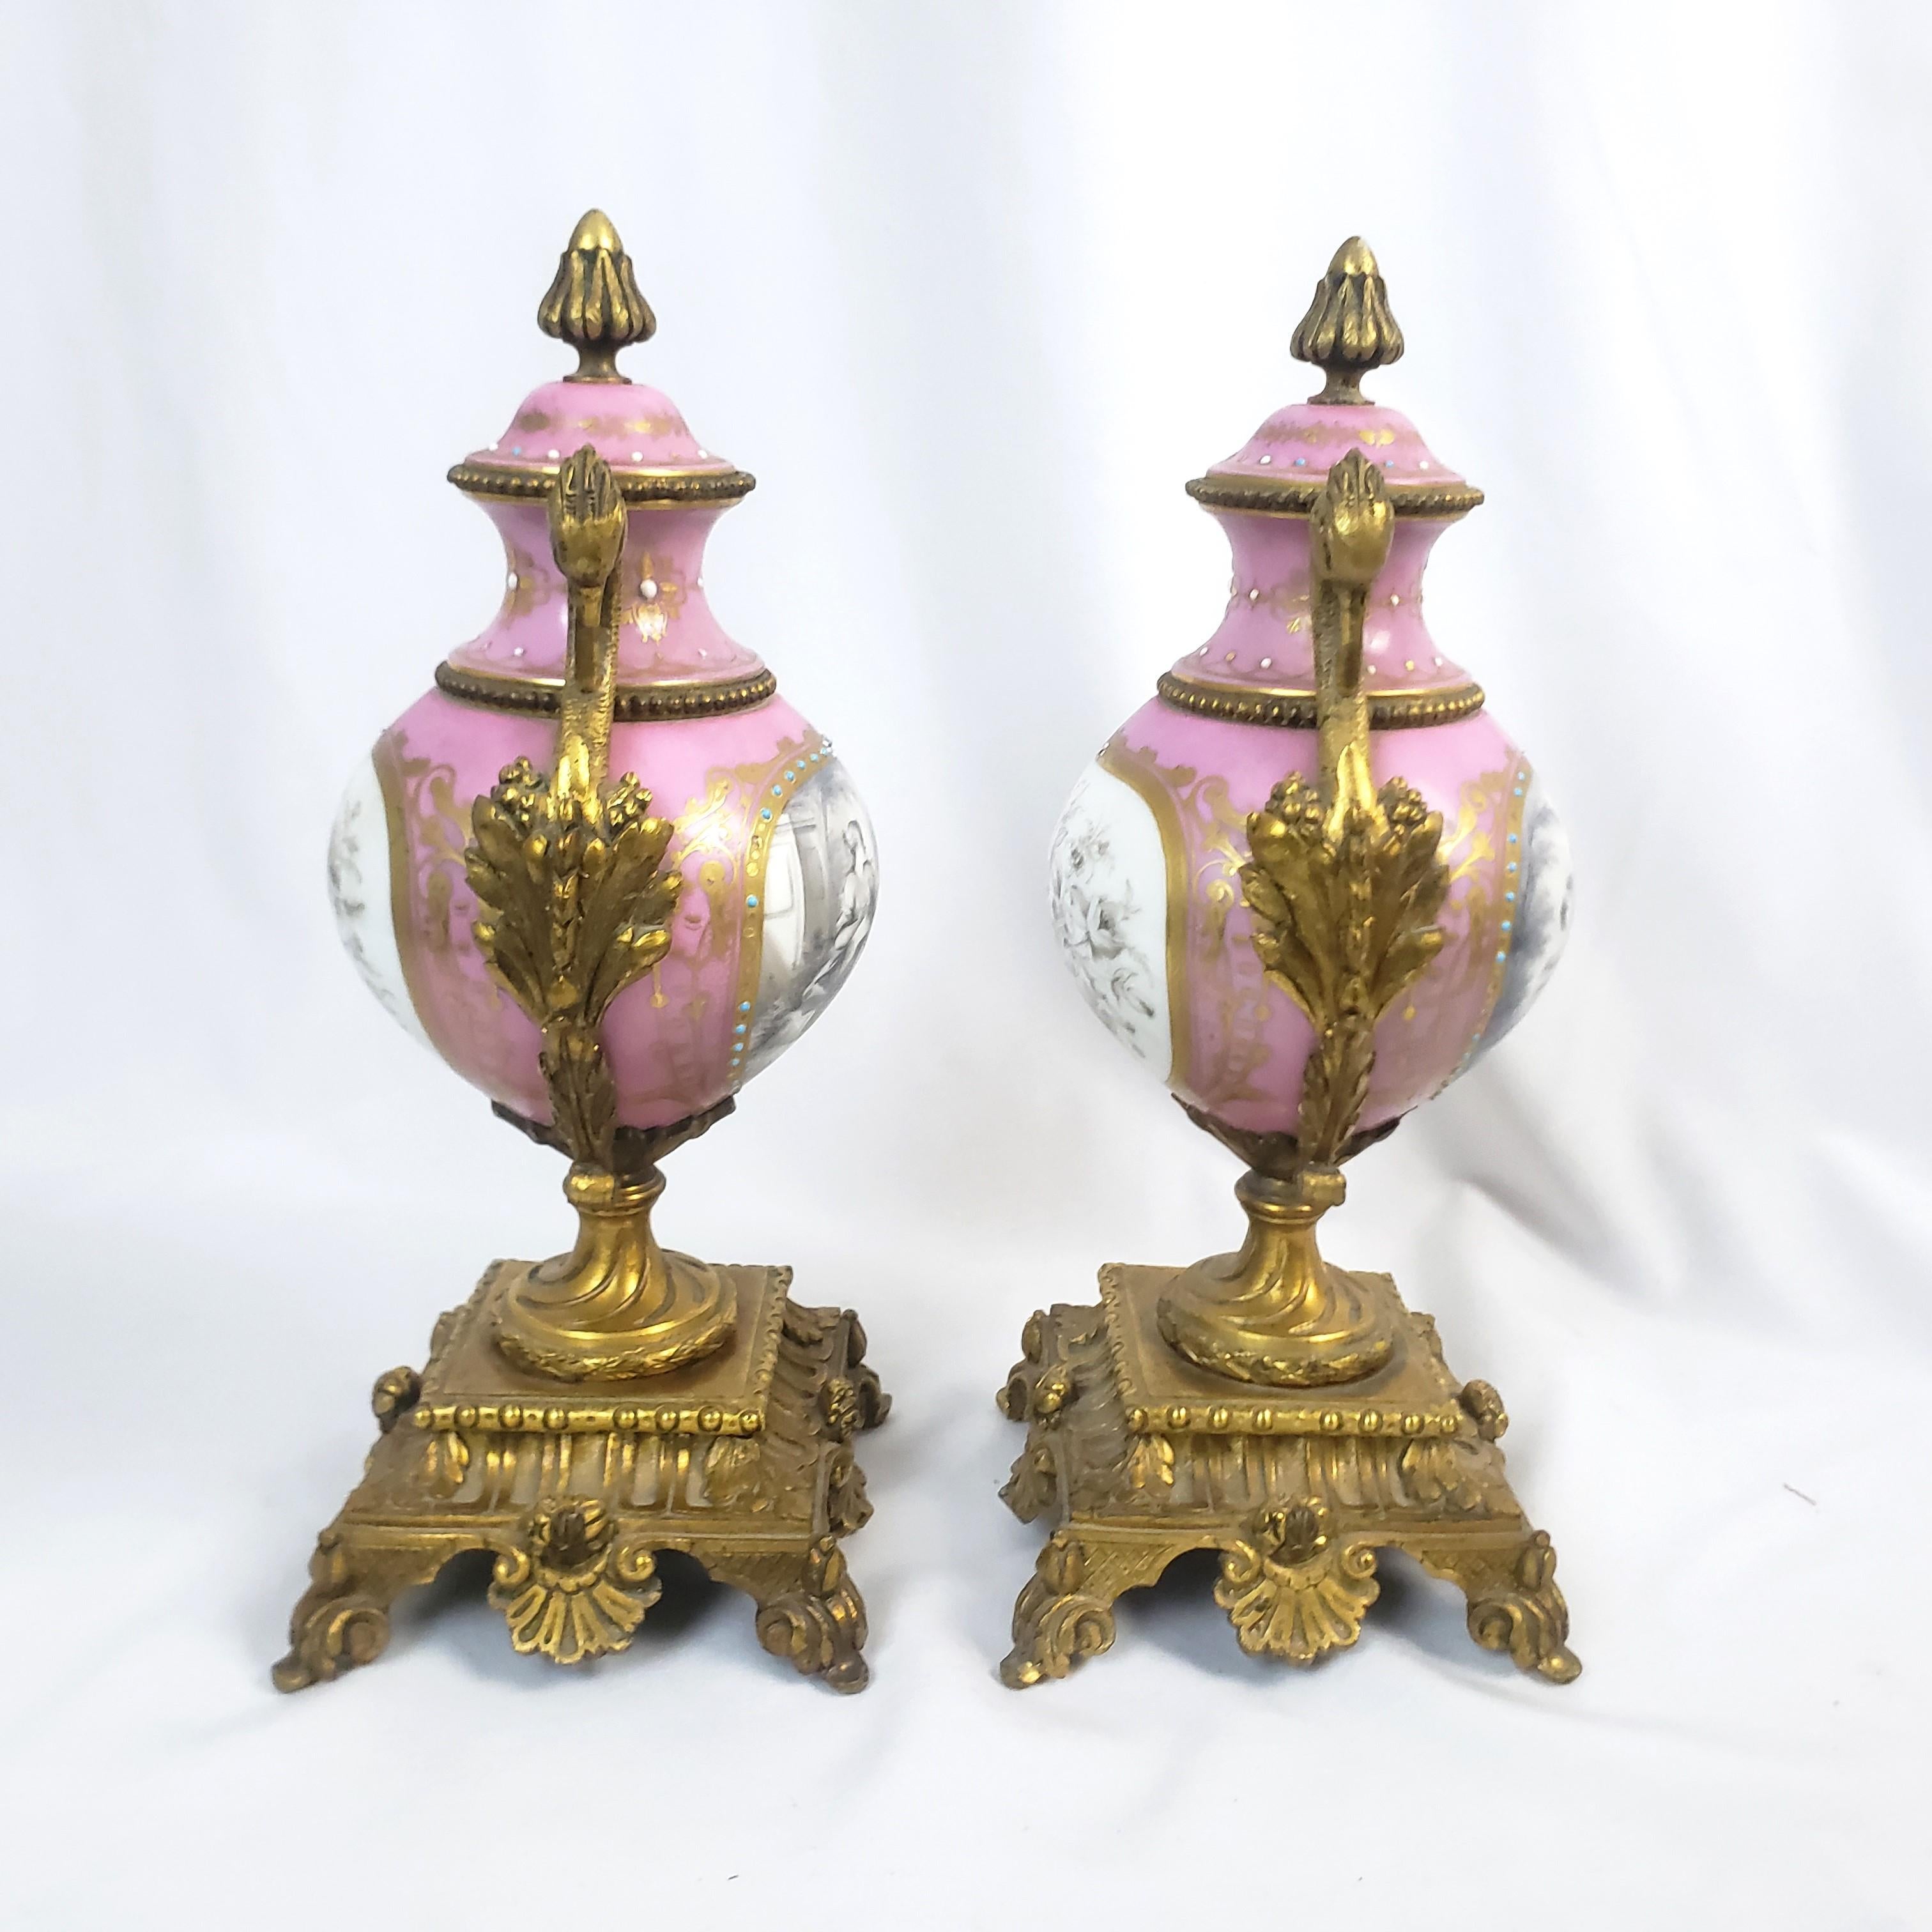 Pair of Antique Sevres Styled Porcelain & Ornate Gilt Bronze Garnitures For Sale 2